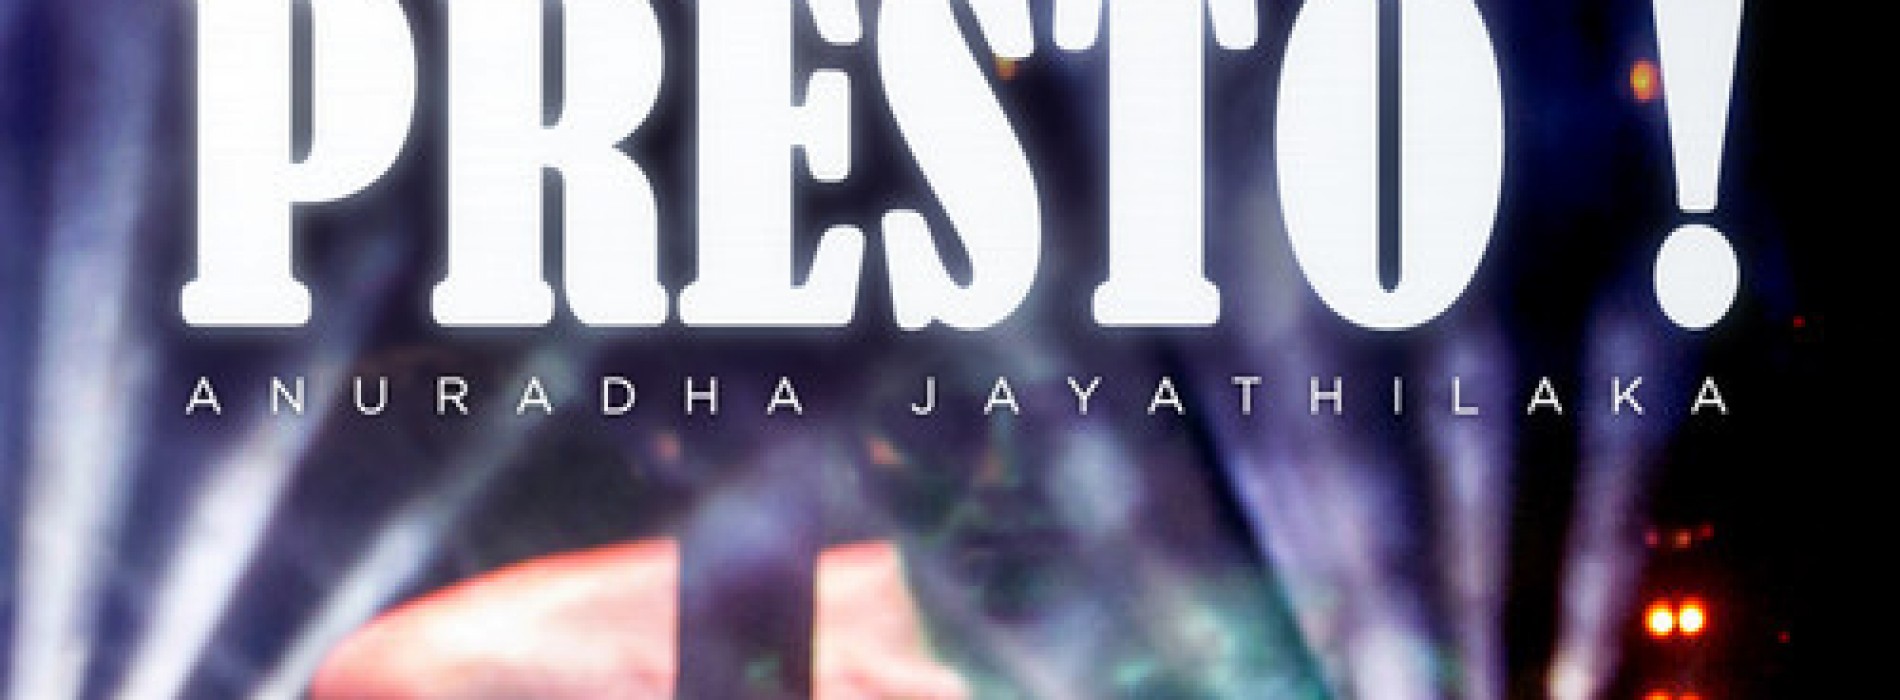 Anuradha Jayathilaka – Presto!